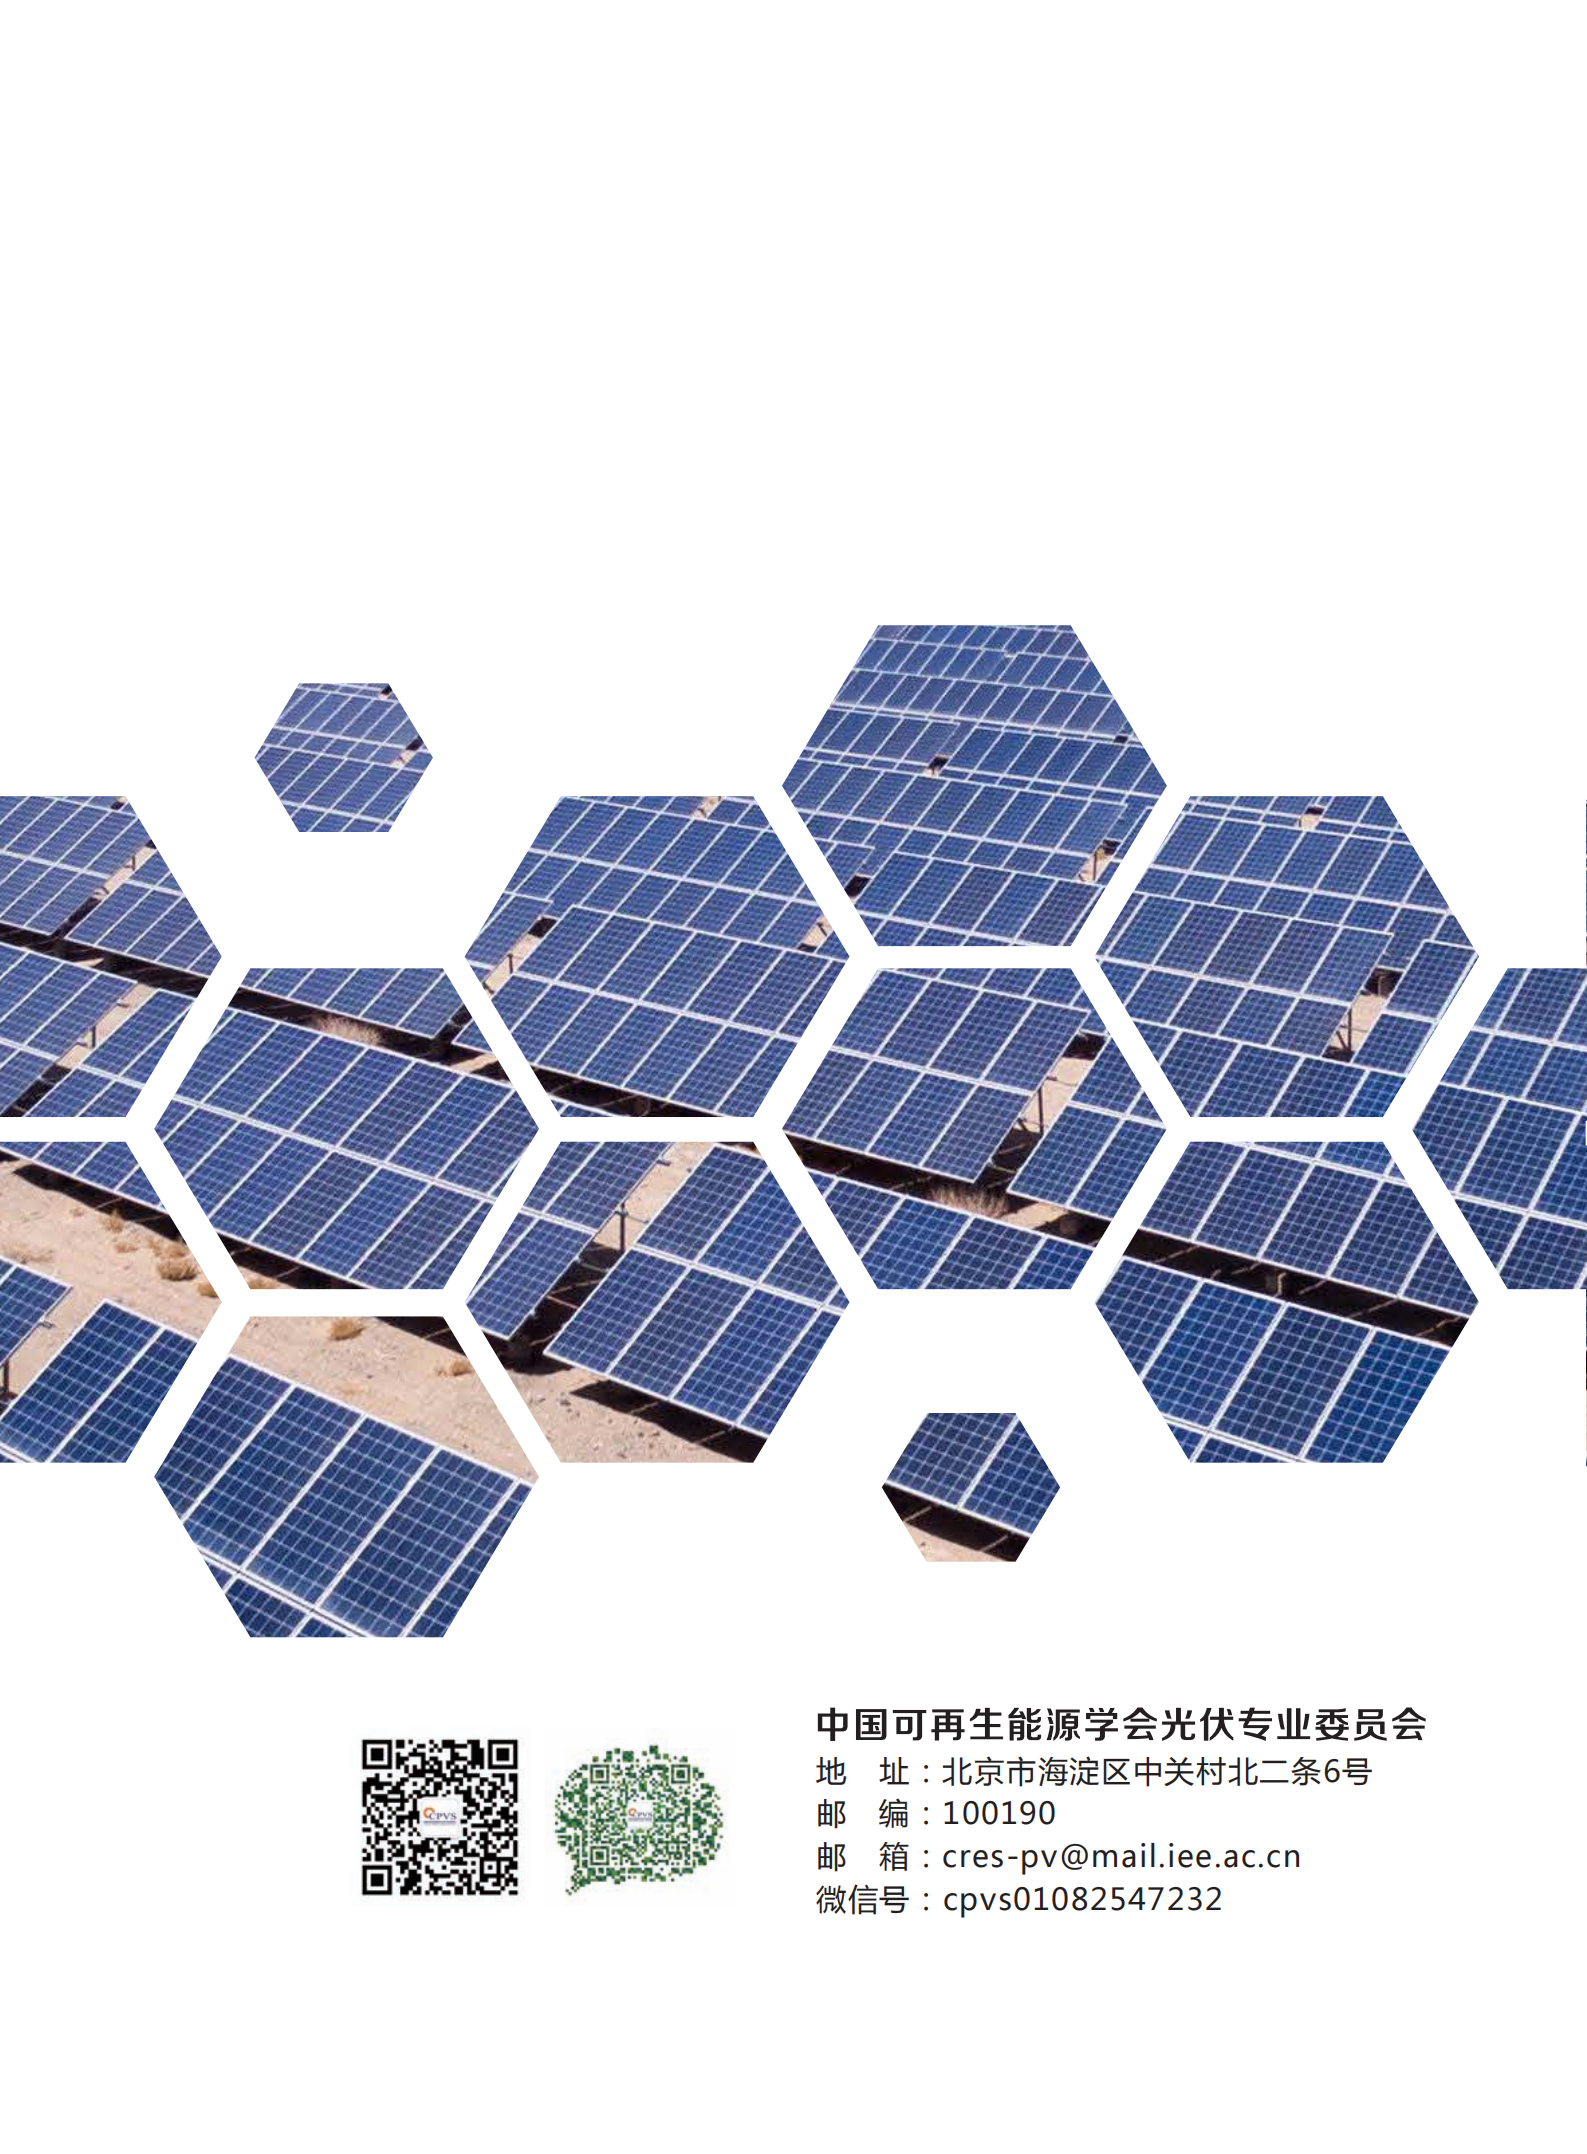 2022年中国光伏技术发展报告简版(1)_16.png